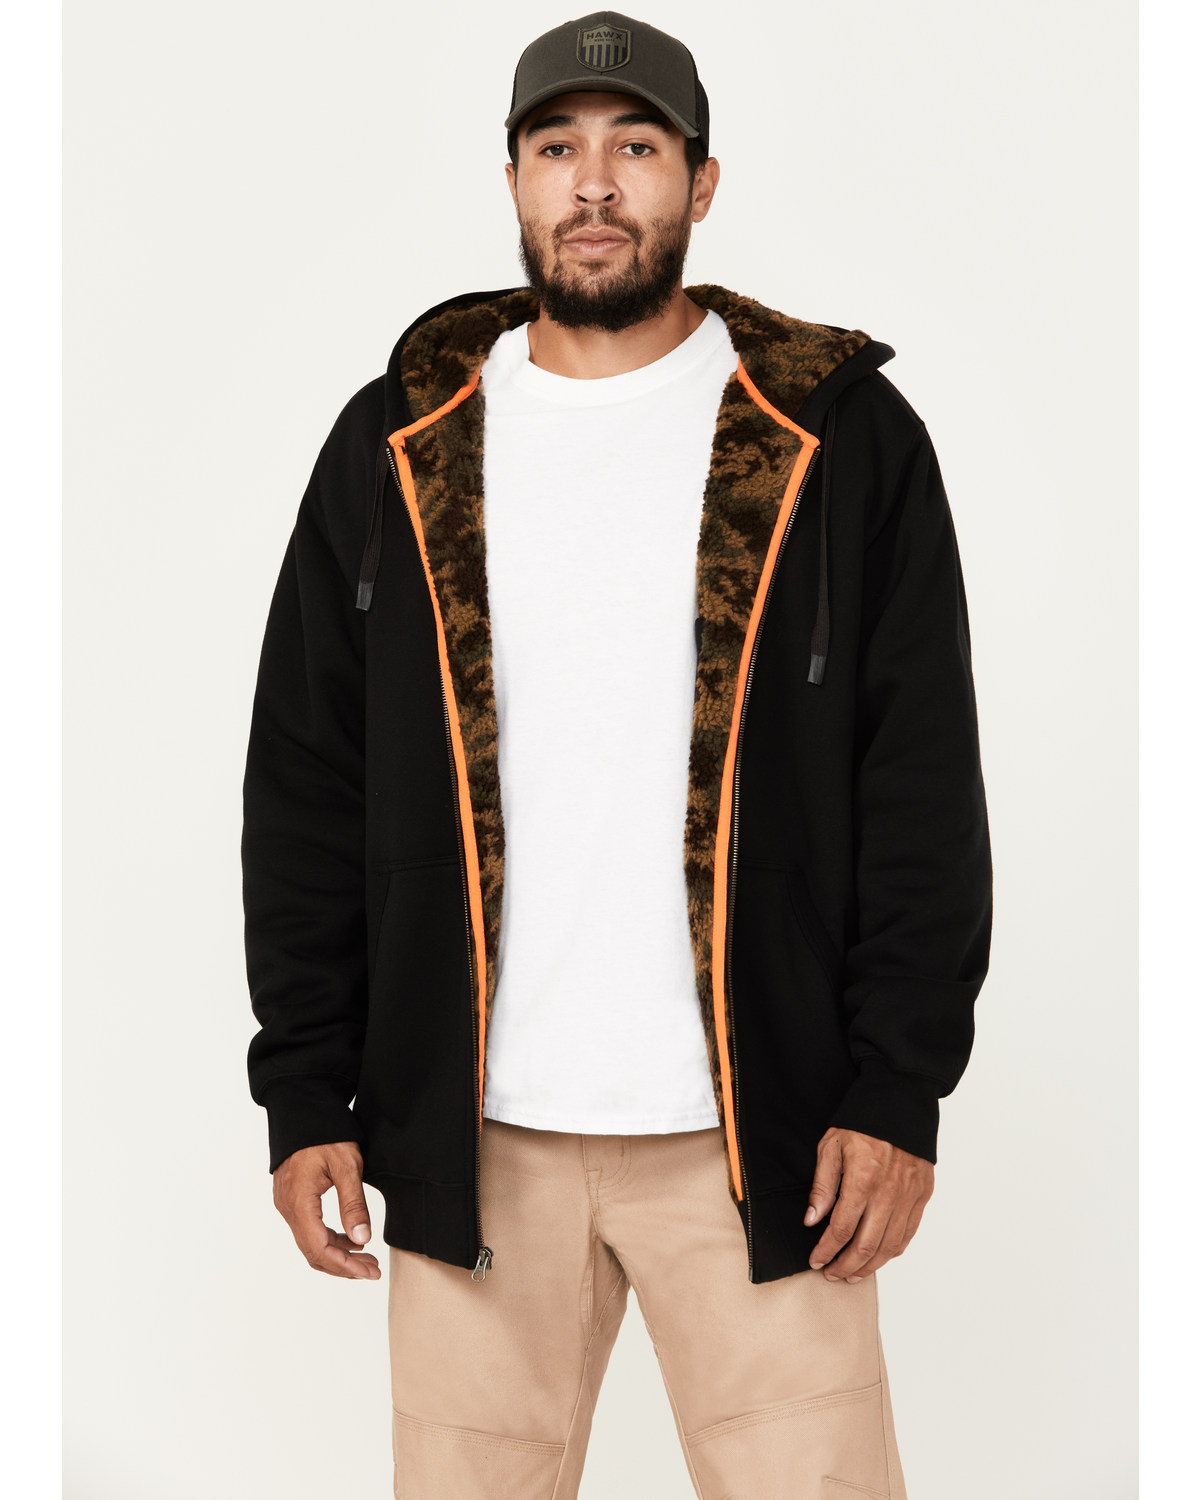 Hawx Men's Sherpa Lined Hooded Jacket